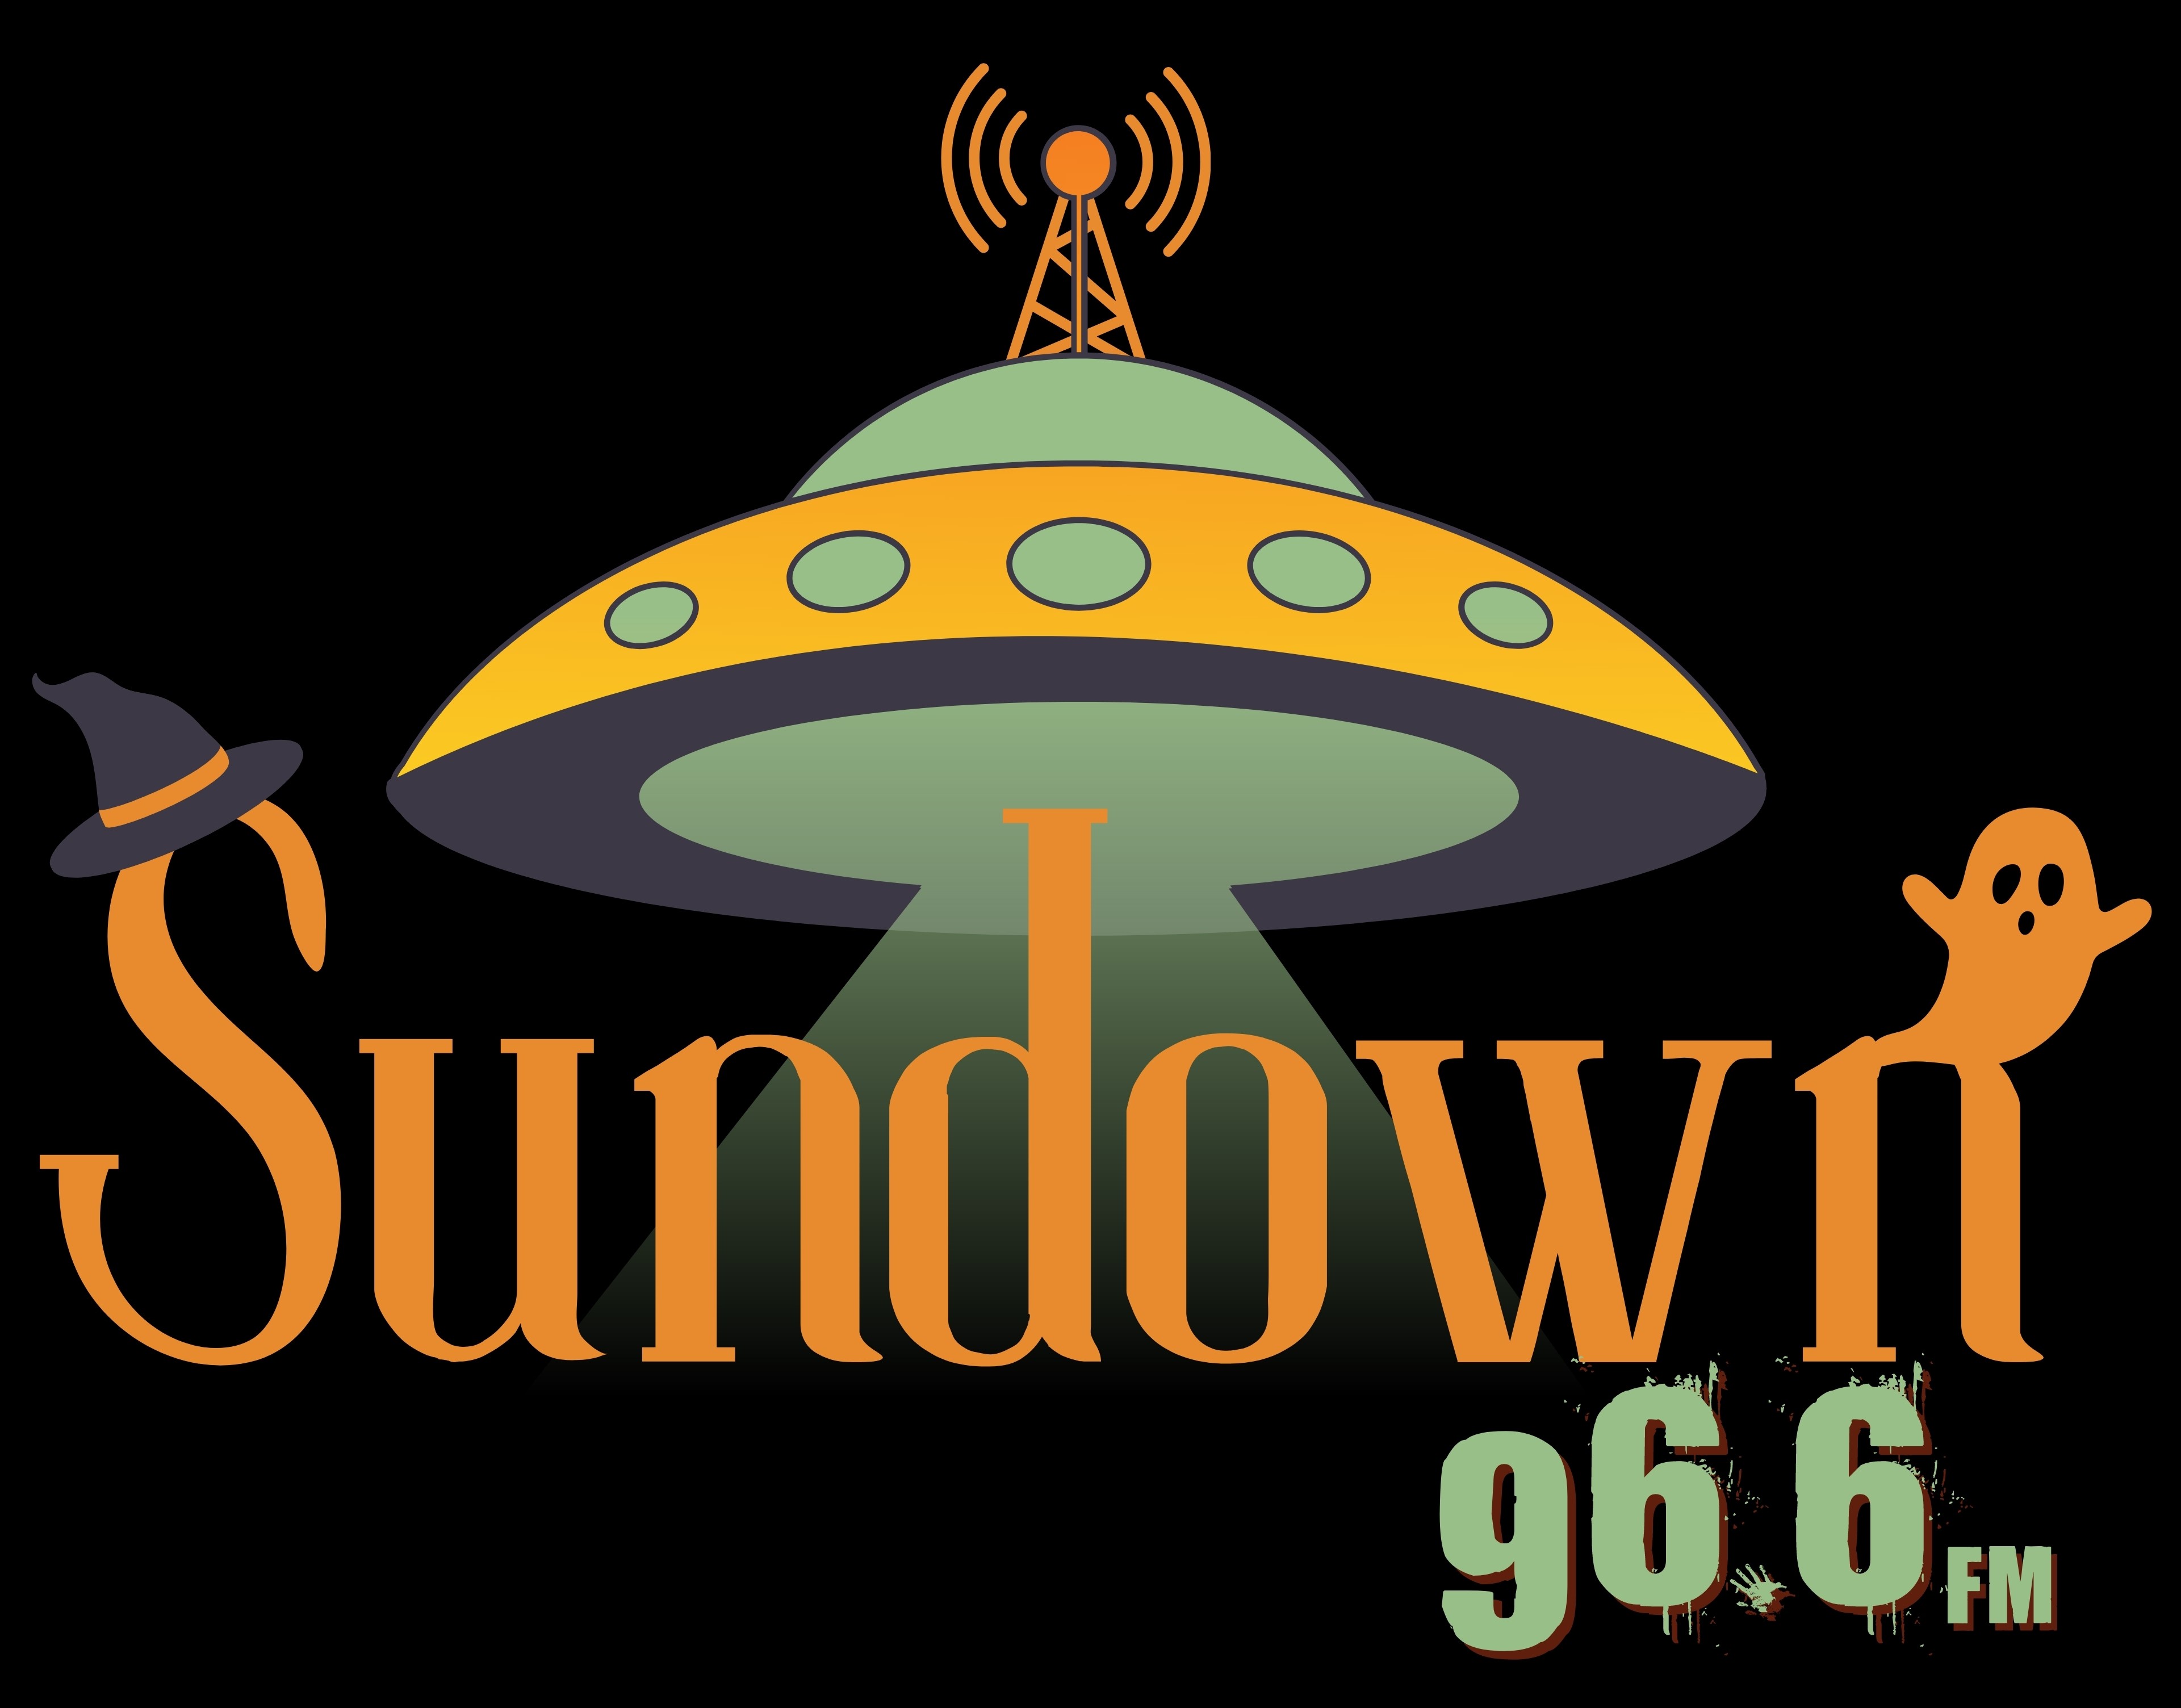 Art for Sundown 96.6FM 4 by Sundown 96.6 FM 4